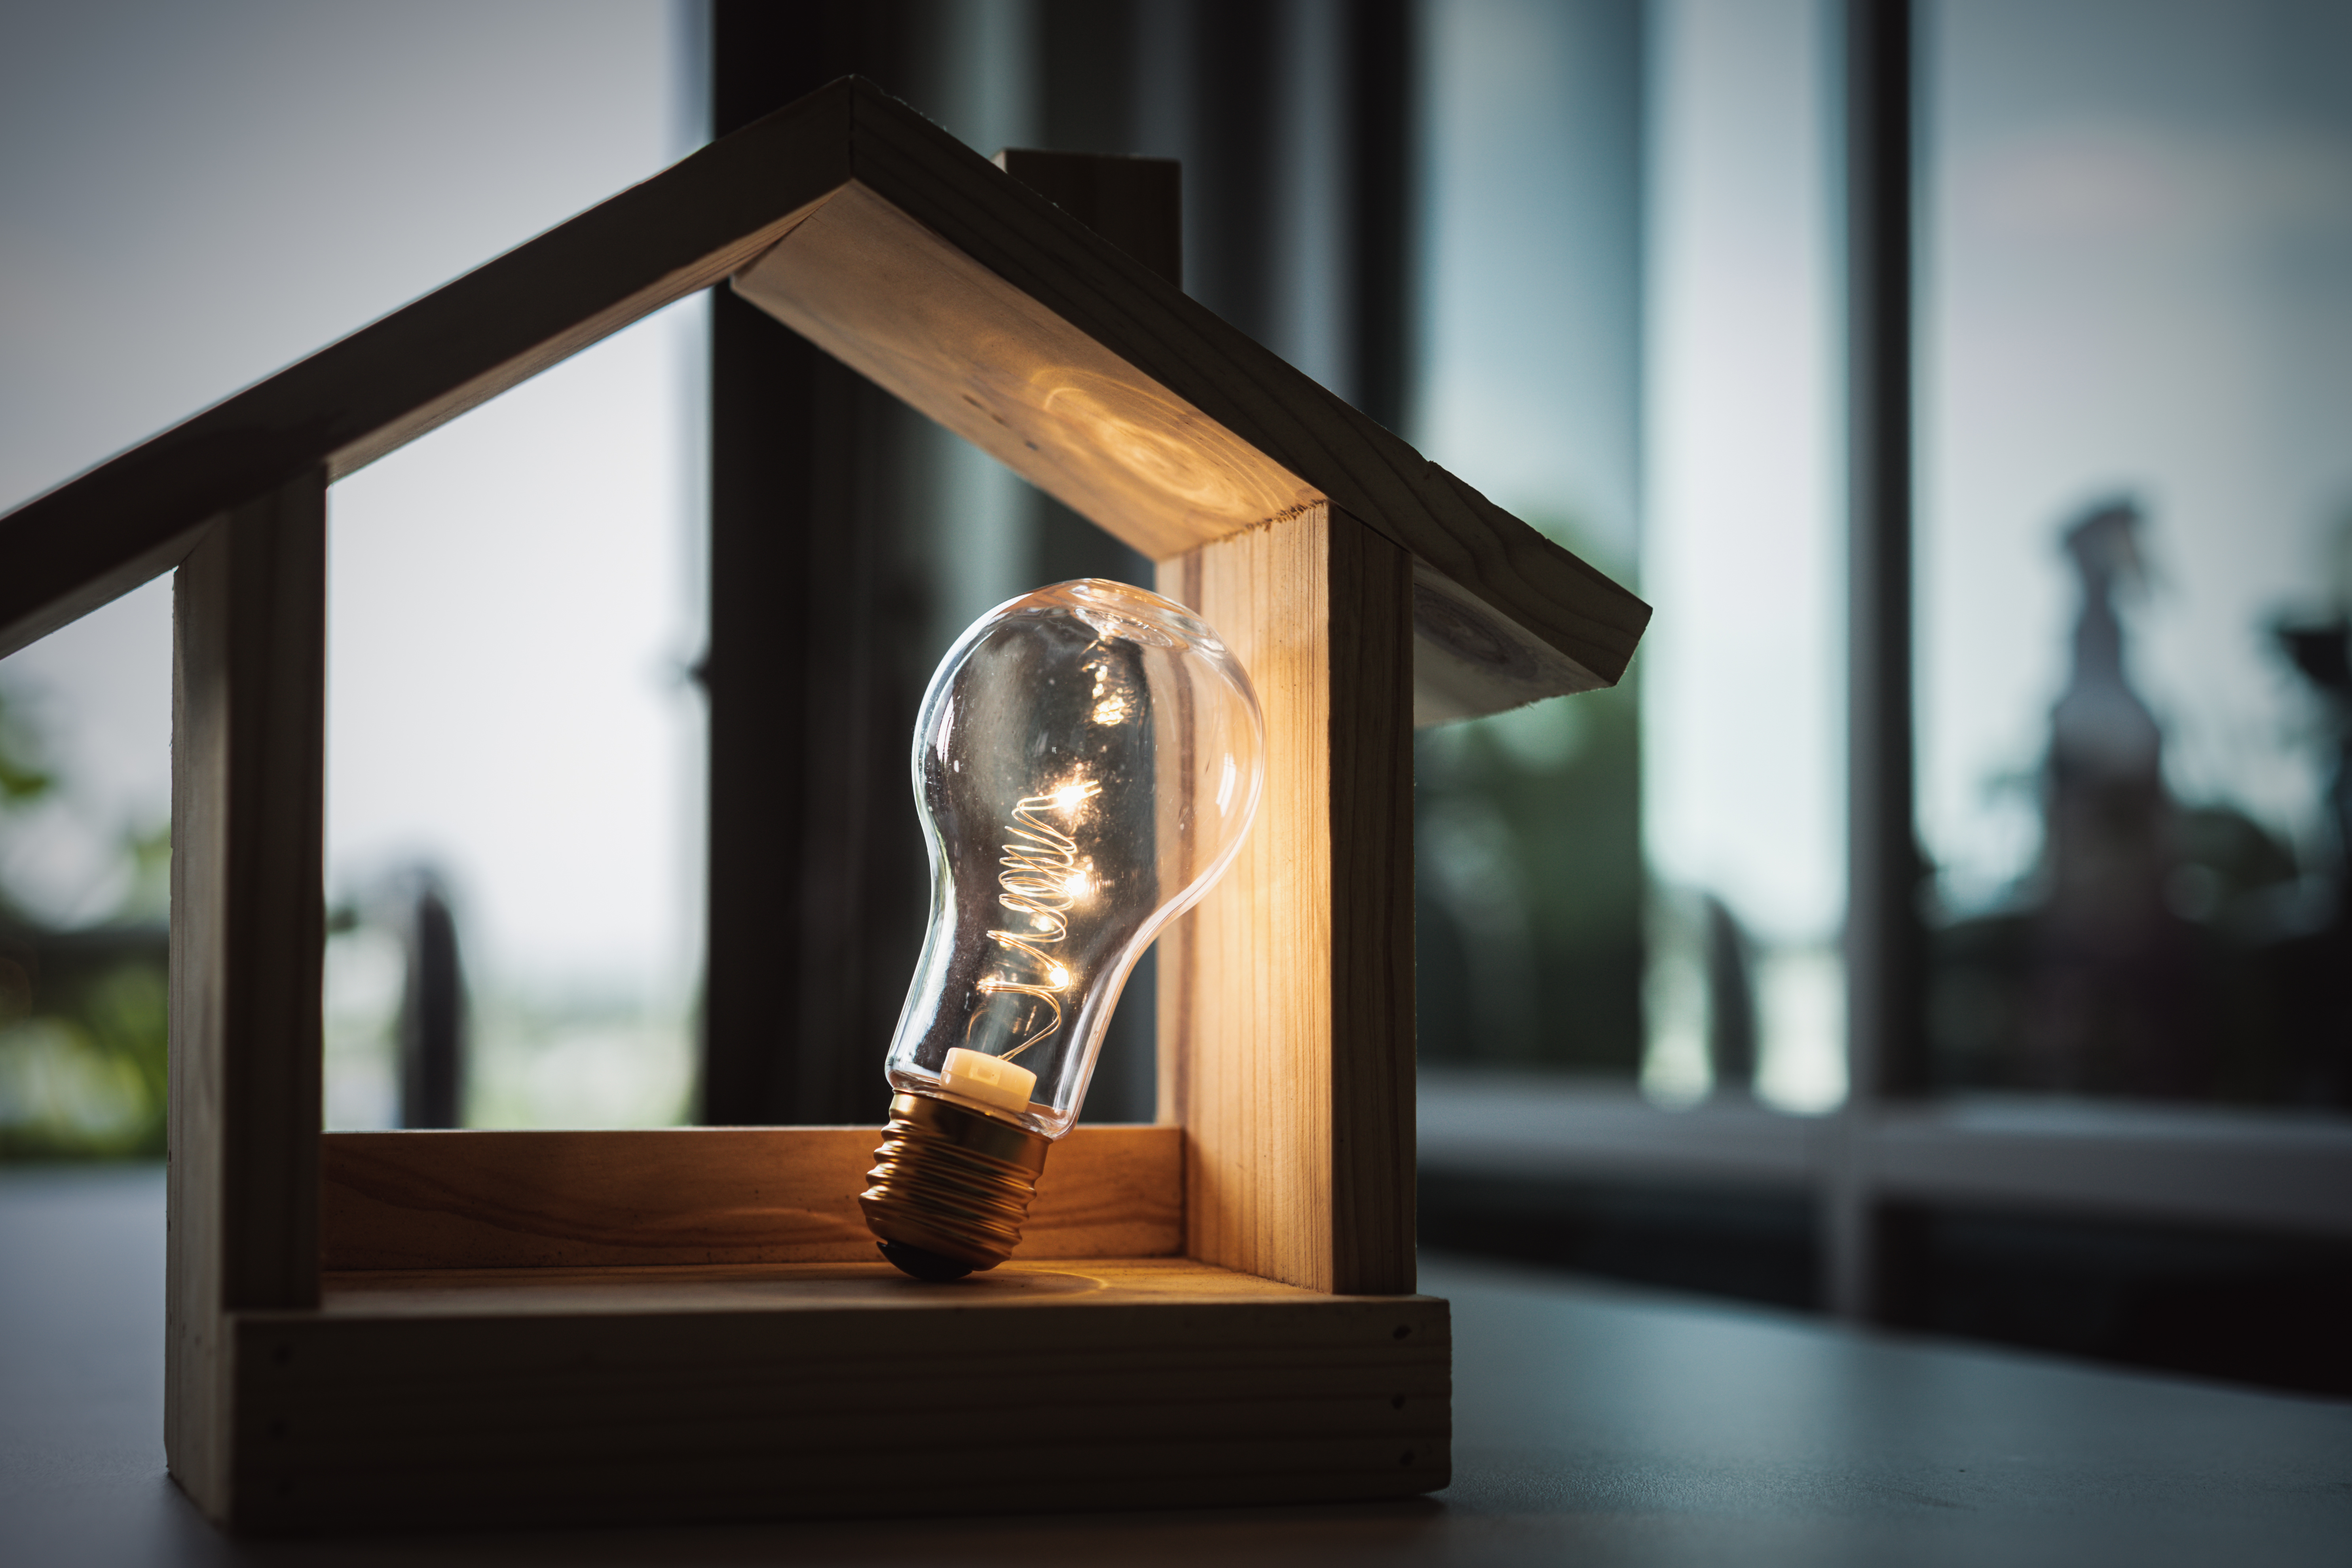 A singular filament lightbulb lights up a miniature wooden house.